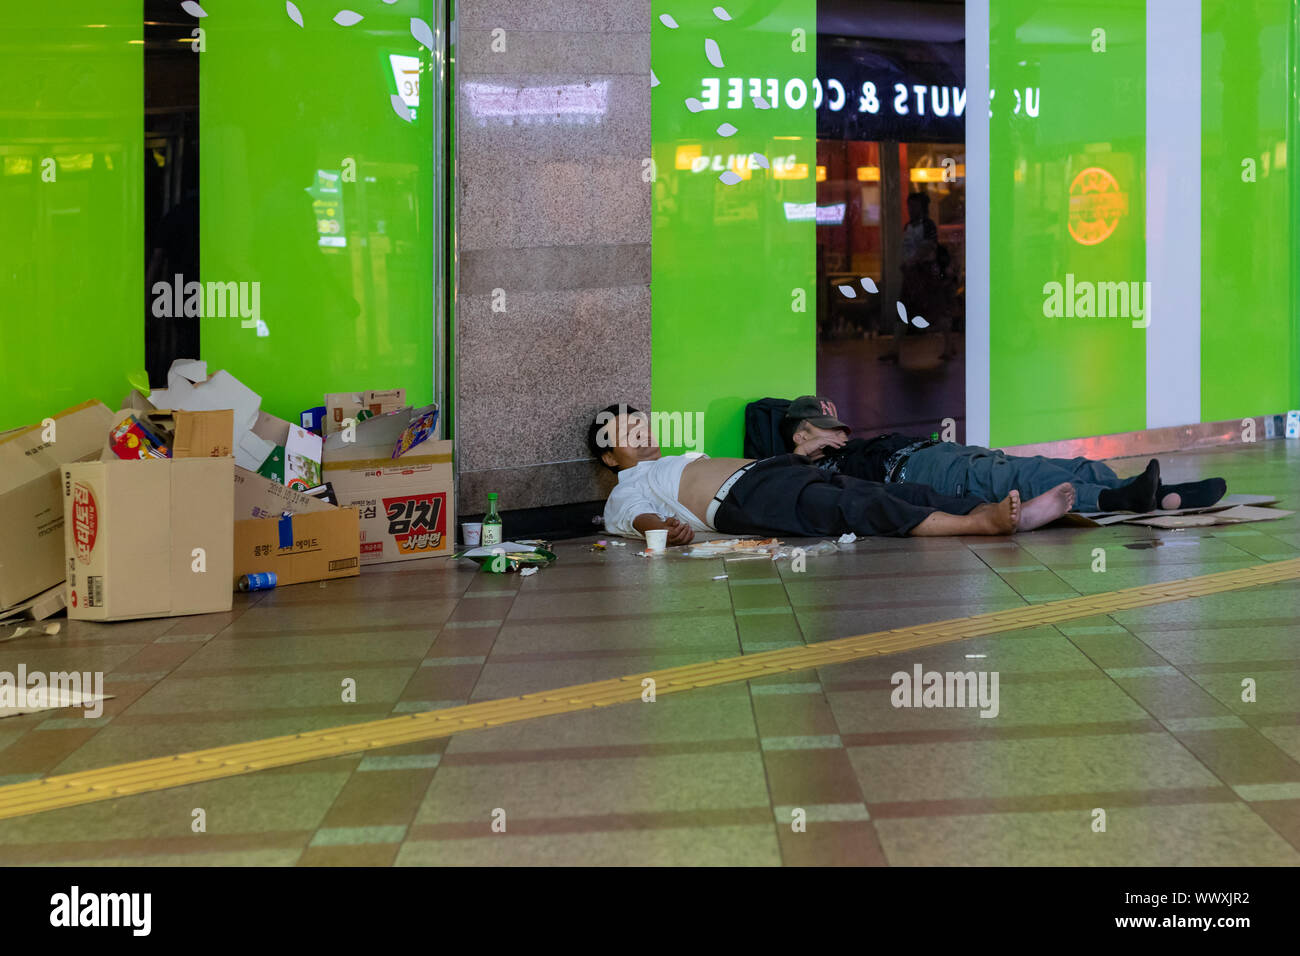 Séoul / Corée du Sud - le 18 août 2018 : Ivre sans-abri dormant dans un centre commercial de Séoul en Corée du Sud Banque D'Images